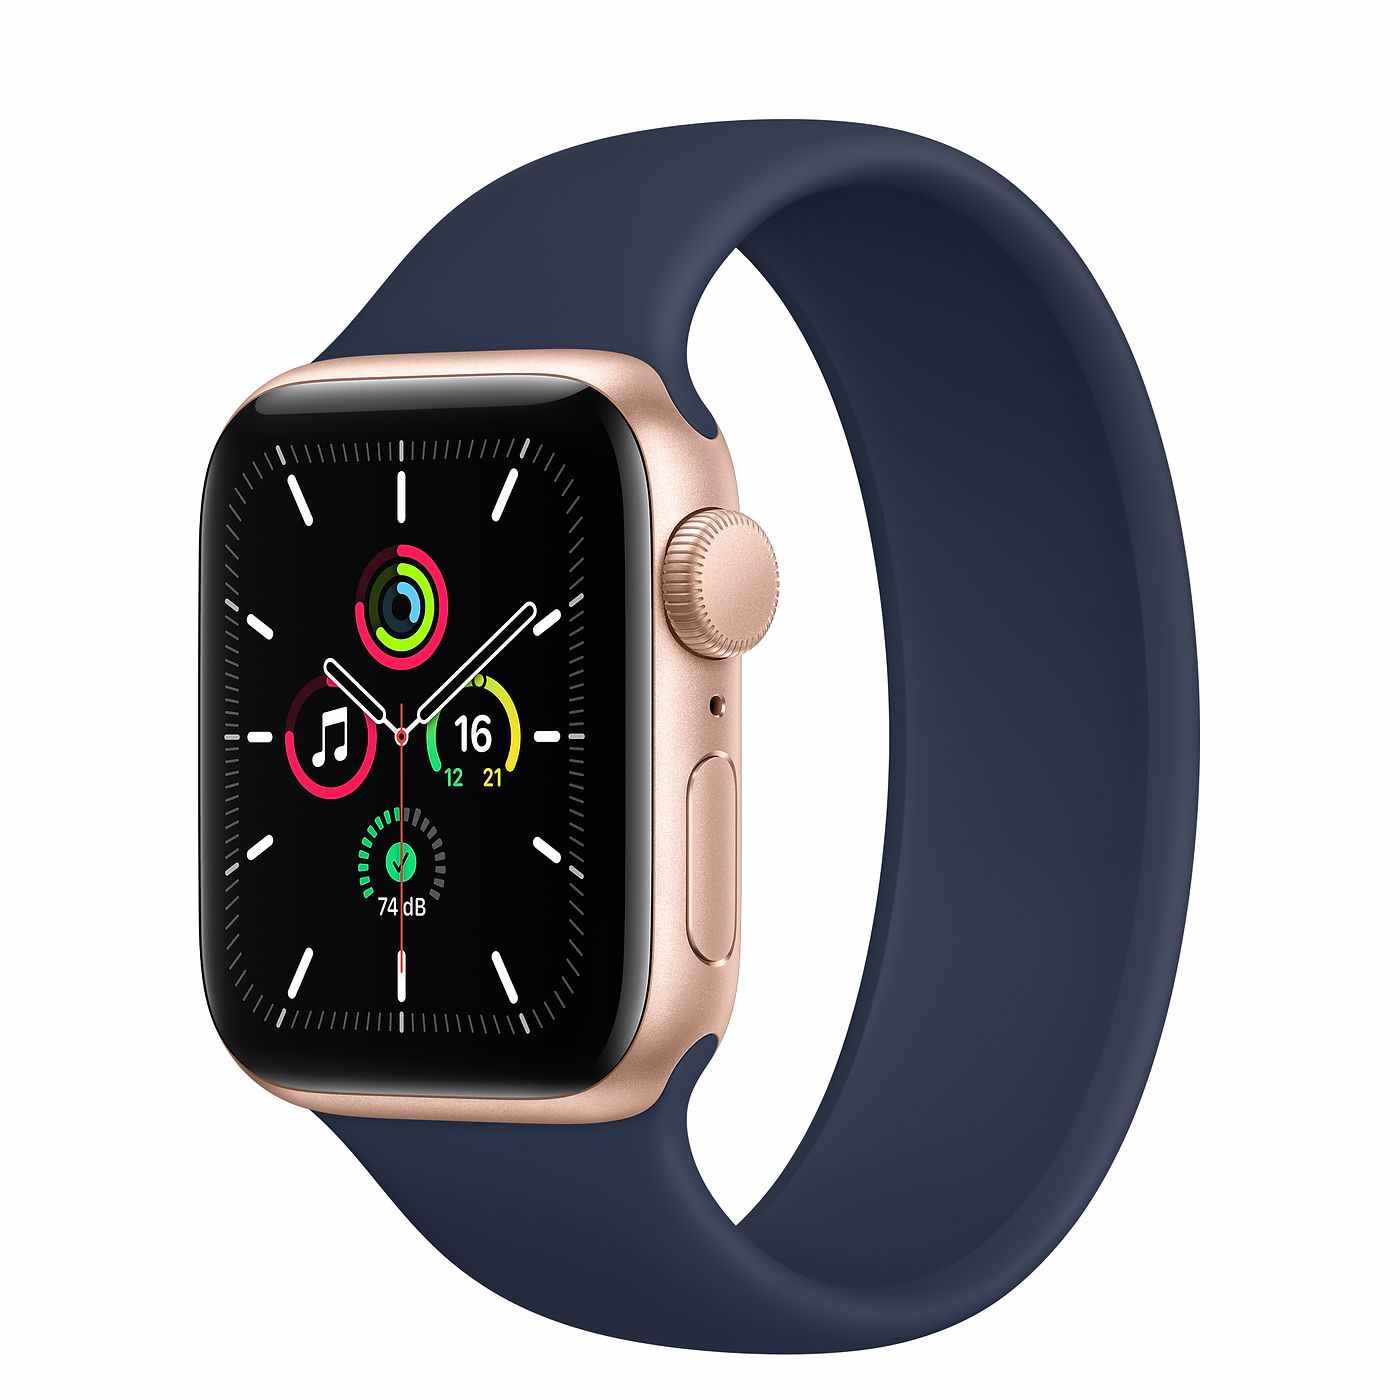 Apple Watch SE, toutes les caractéristiques pour comparer